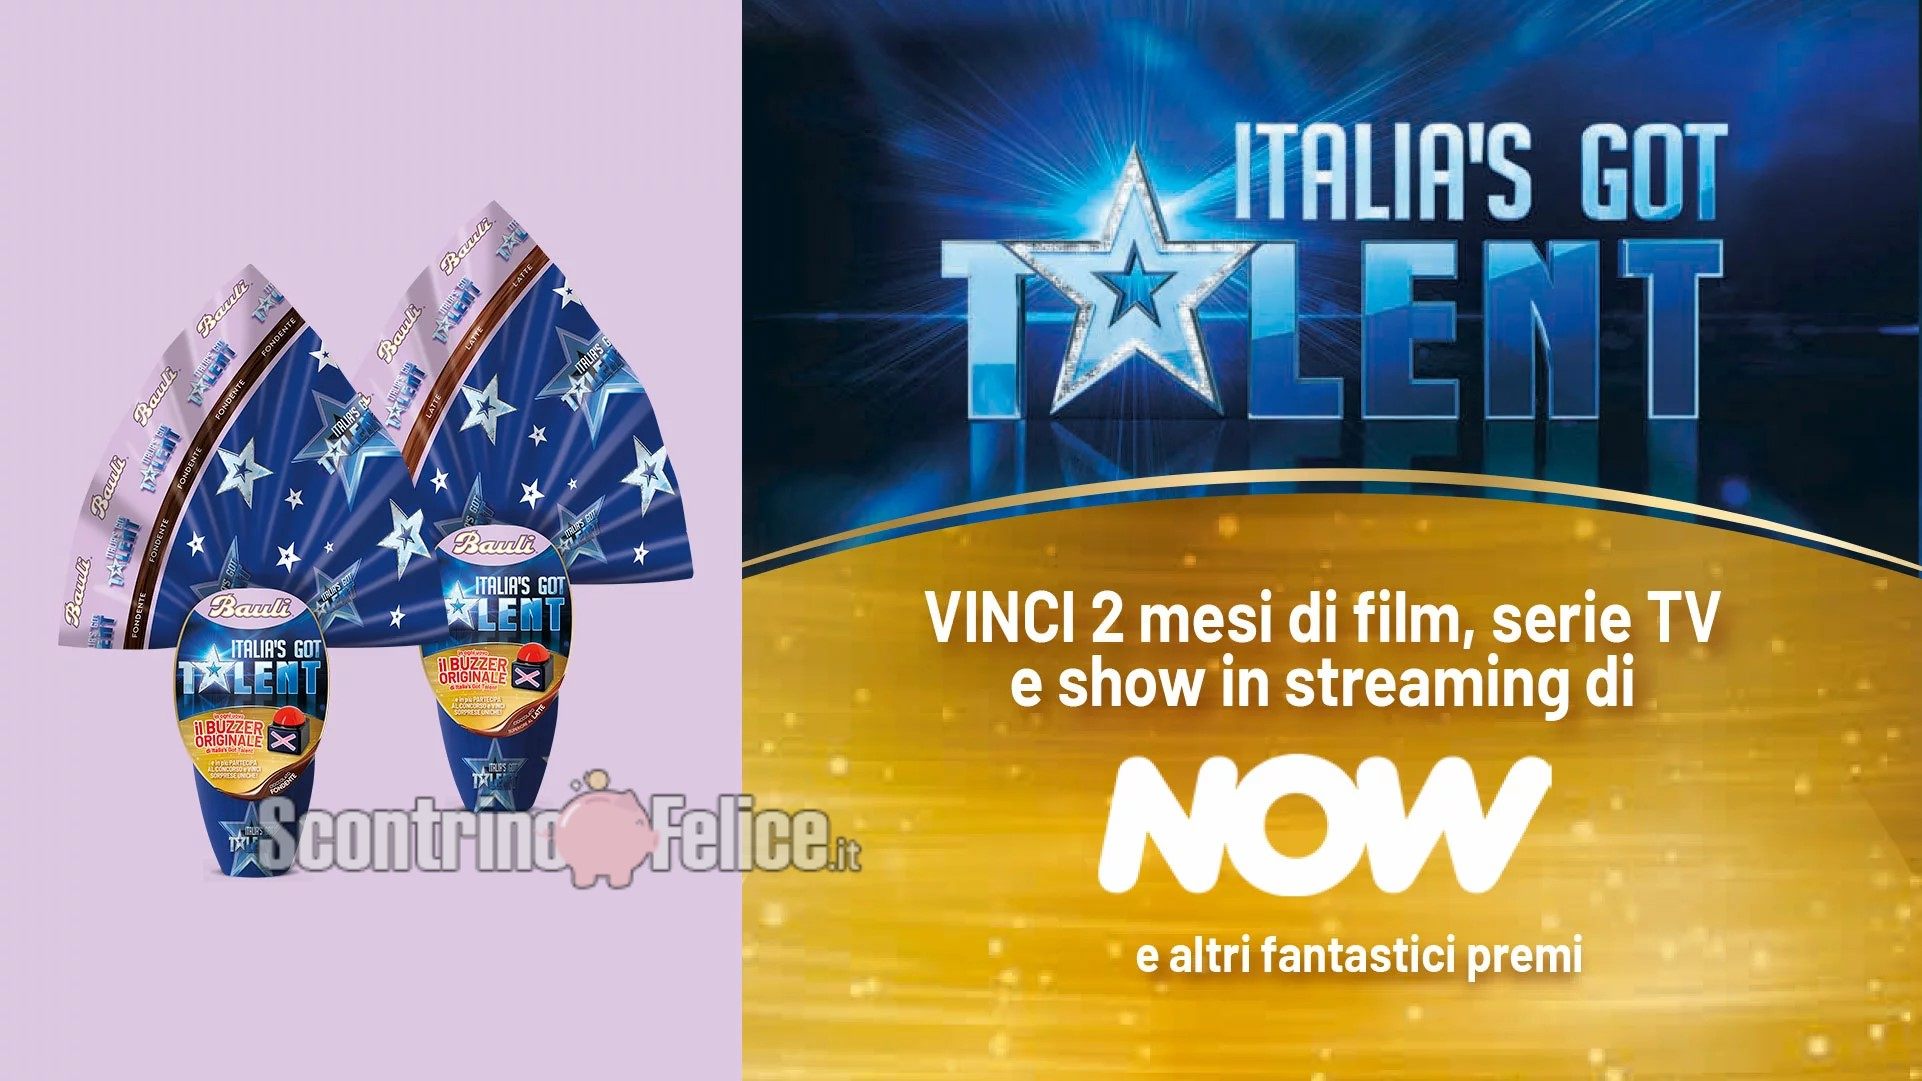 Concorso uova di Pasqua Bauli "Italia's Got Talent" 2022: in palio 1000 Pass Now Cinema e Intrattenimento e ingressi al programma IGT